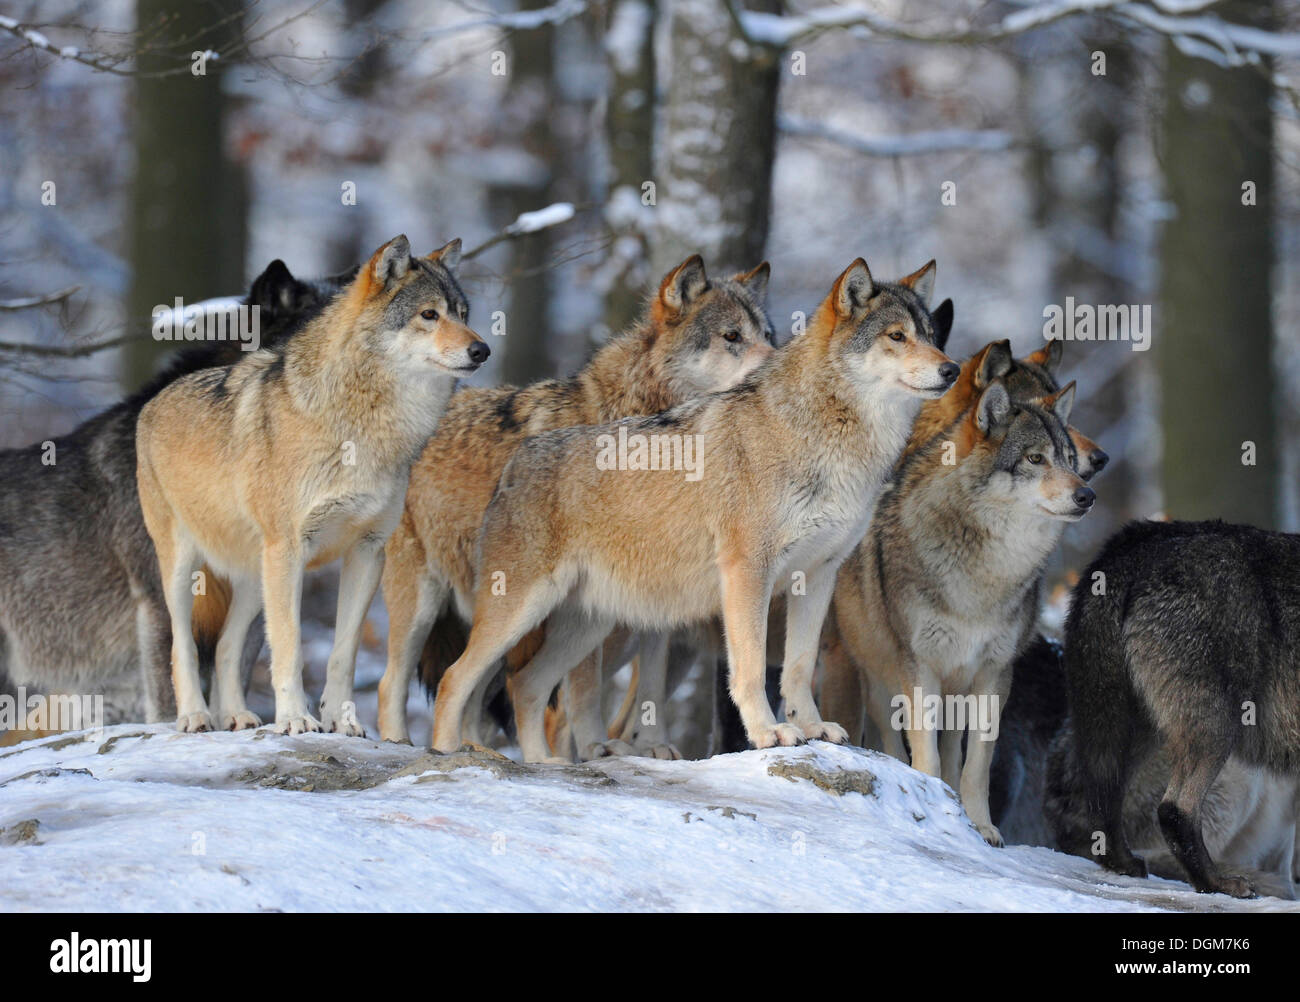 Les loups de la vallée du Mackenzie (Canis lupus occidentalis), wolf pack à l'affût, dans la neige, captive, Bade-Wurtemberg, Allemagne Banque D'Images